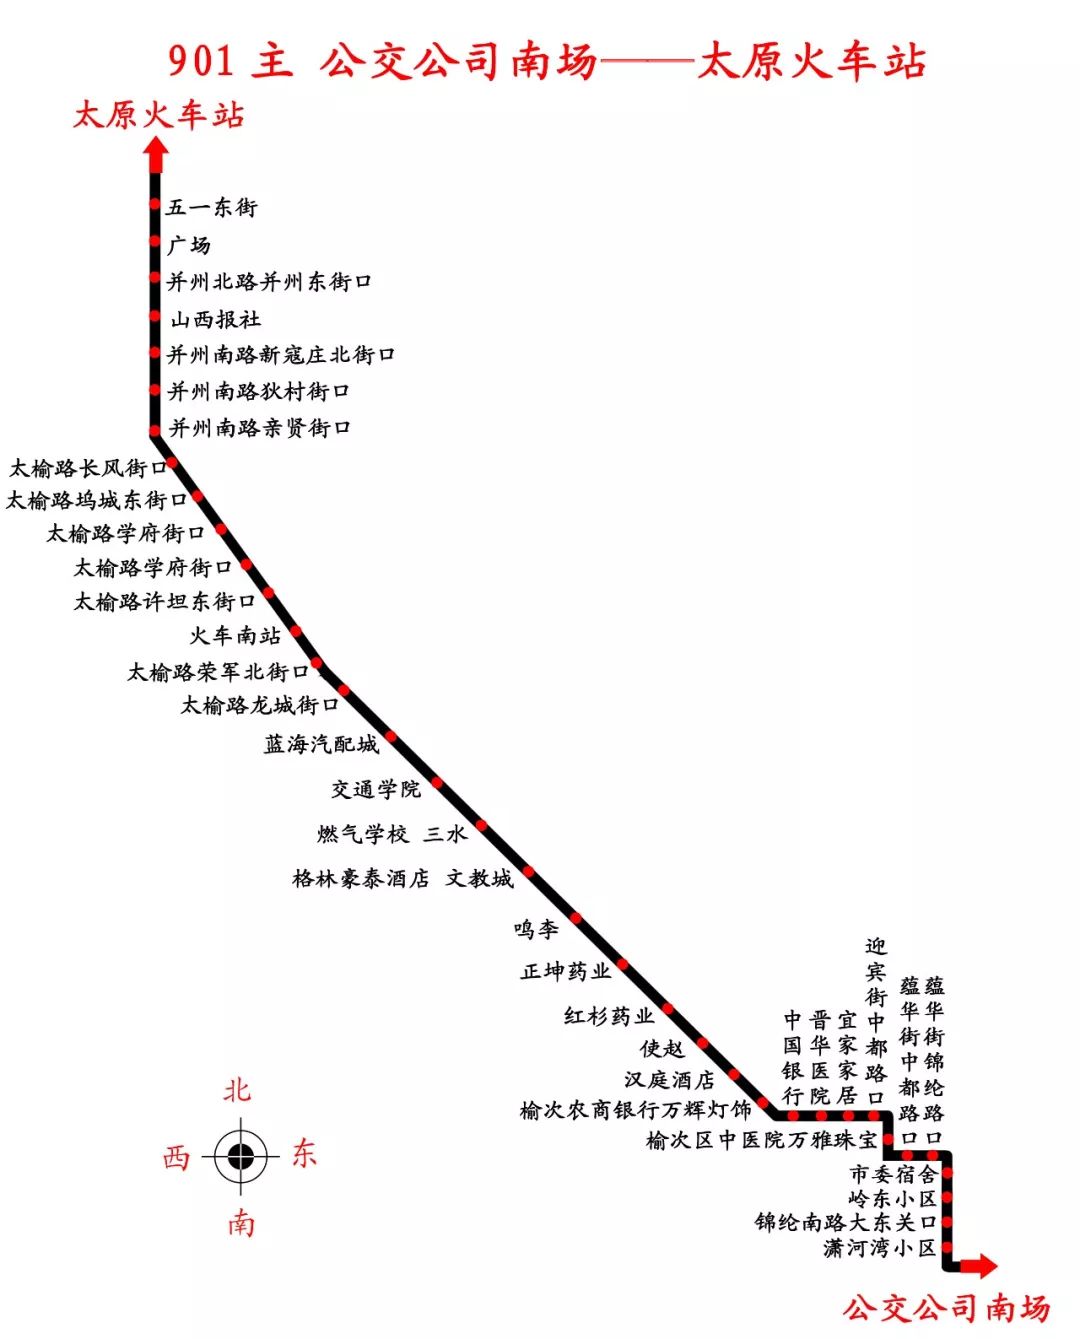 921公交车站的路线图图片